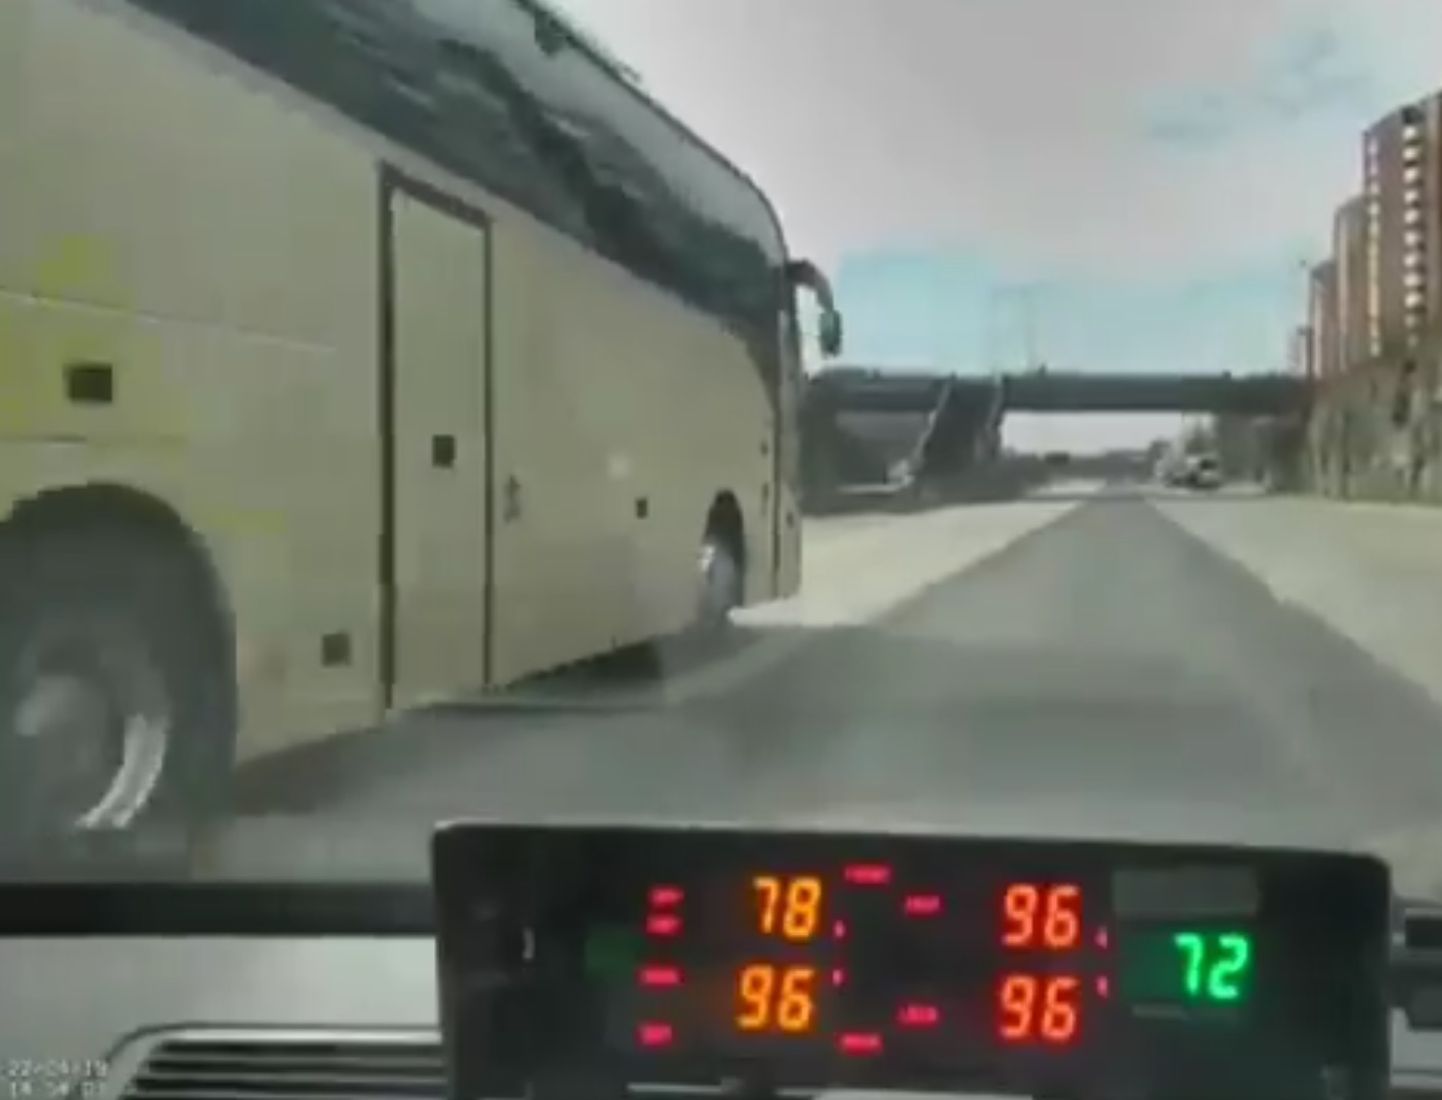 Рейсовый автобус в Таллинне промчался мимо полиции со скоростью 96 км/ч.